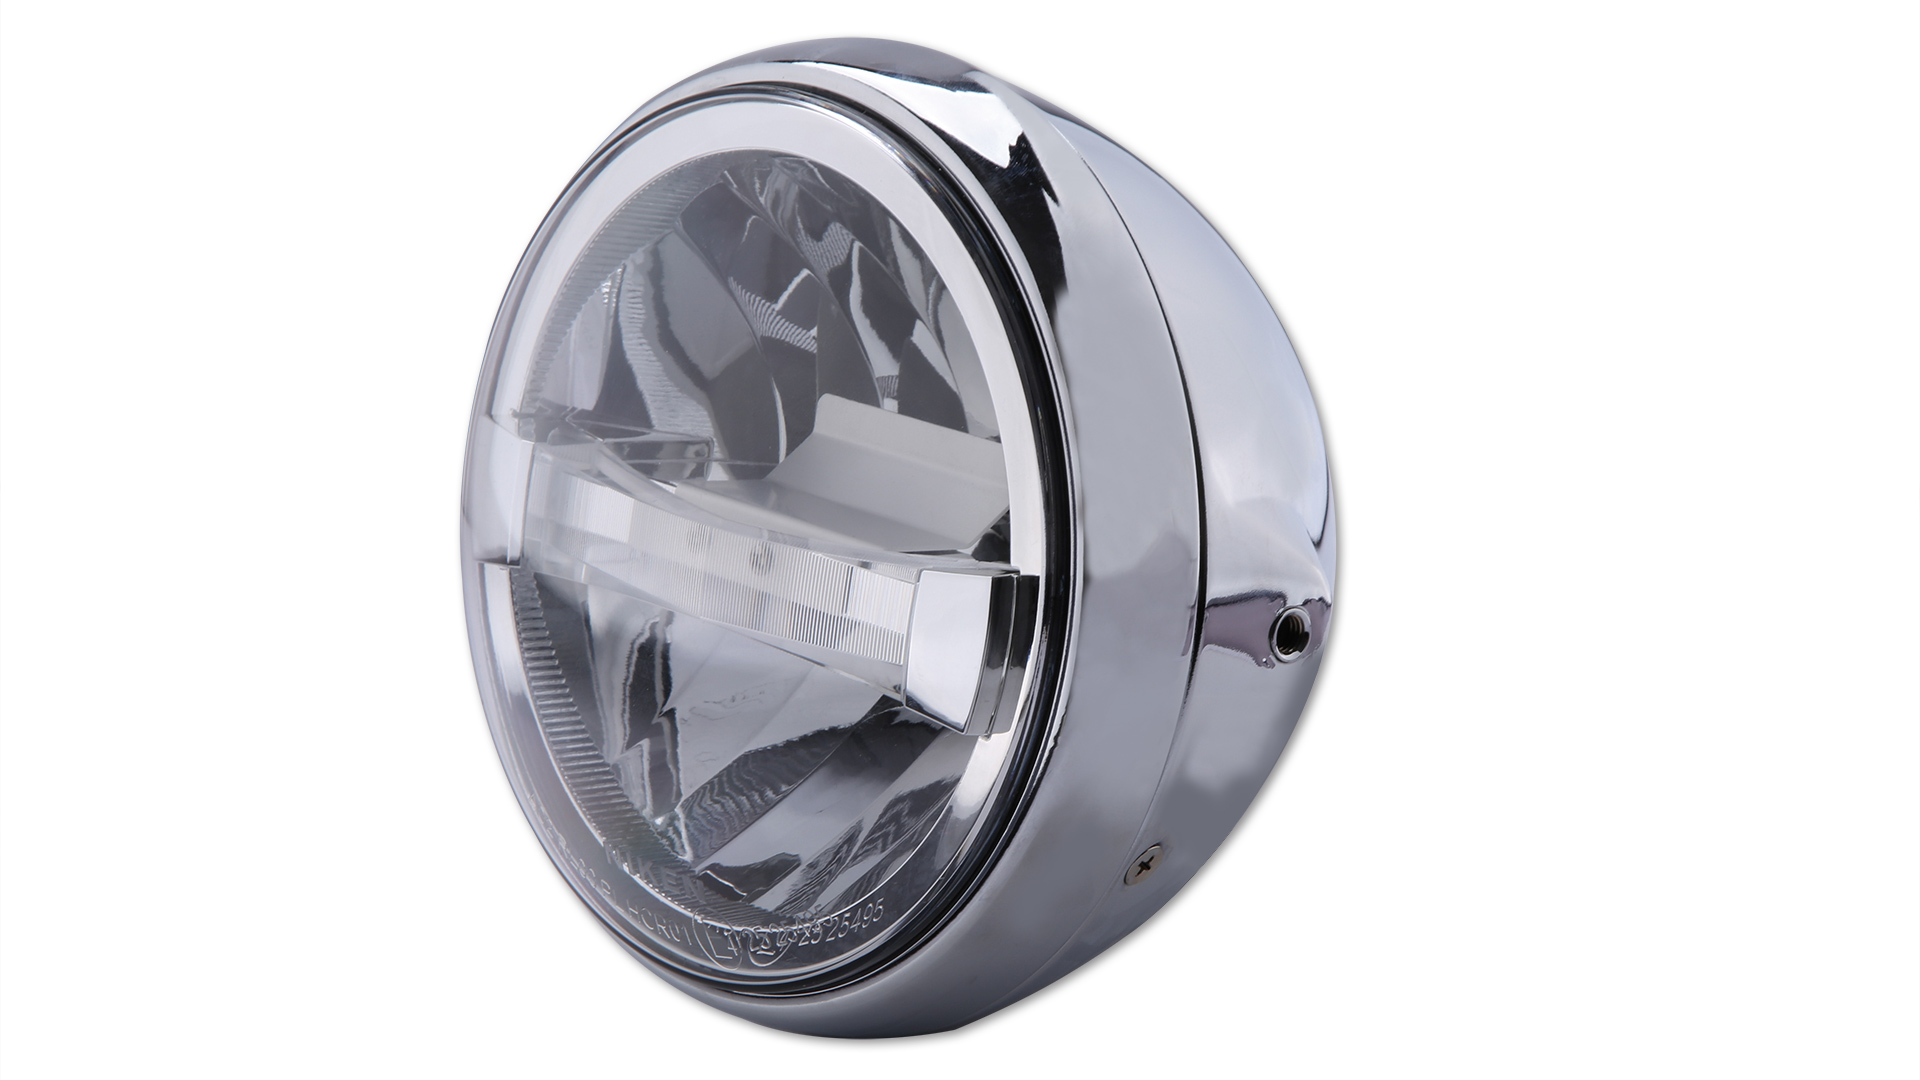 Faro LED de 7 pulgadas BRITISH-STYLE TYPE 4 con TFL, carcasa metálica, cristal transparente, redondo, montaje lateral, homologado E.